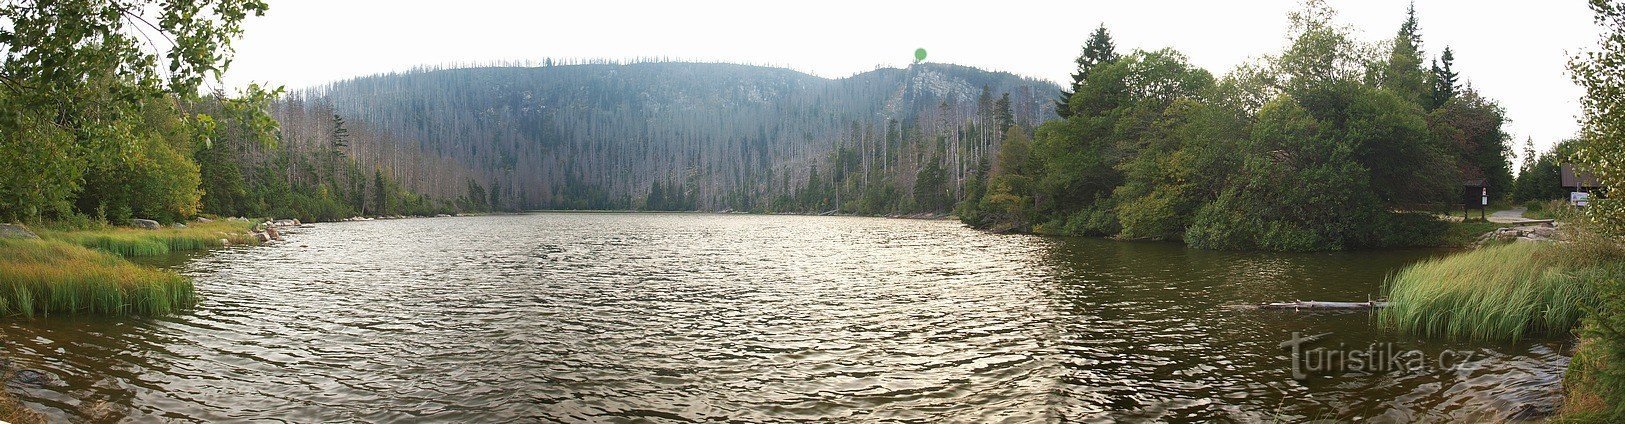 Ćelavo jezero izvađeno iz brane. Zelena točka prikazuje vidikovac s kamenim obelima